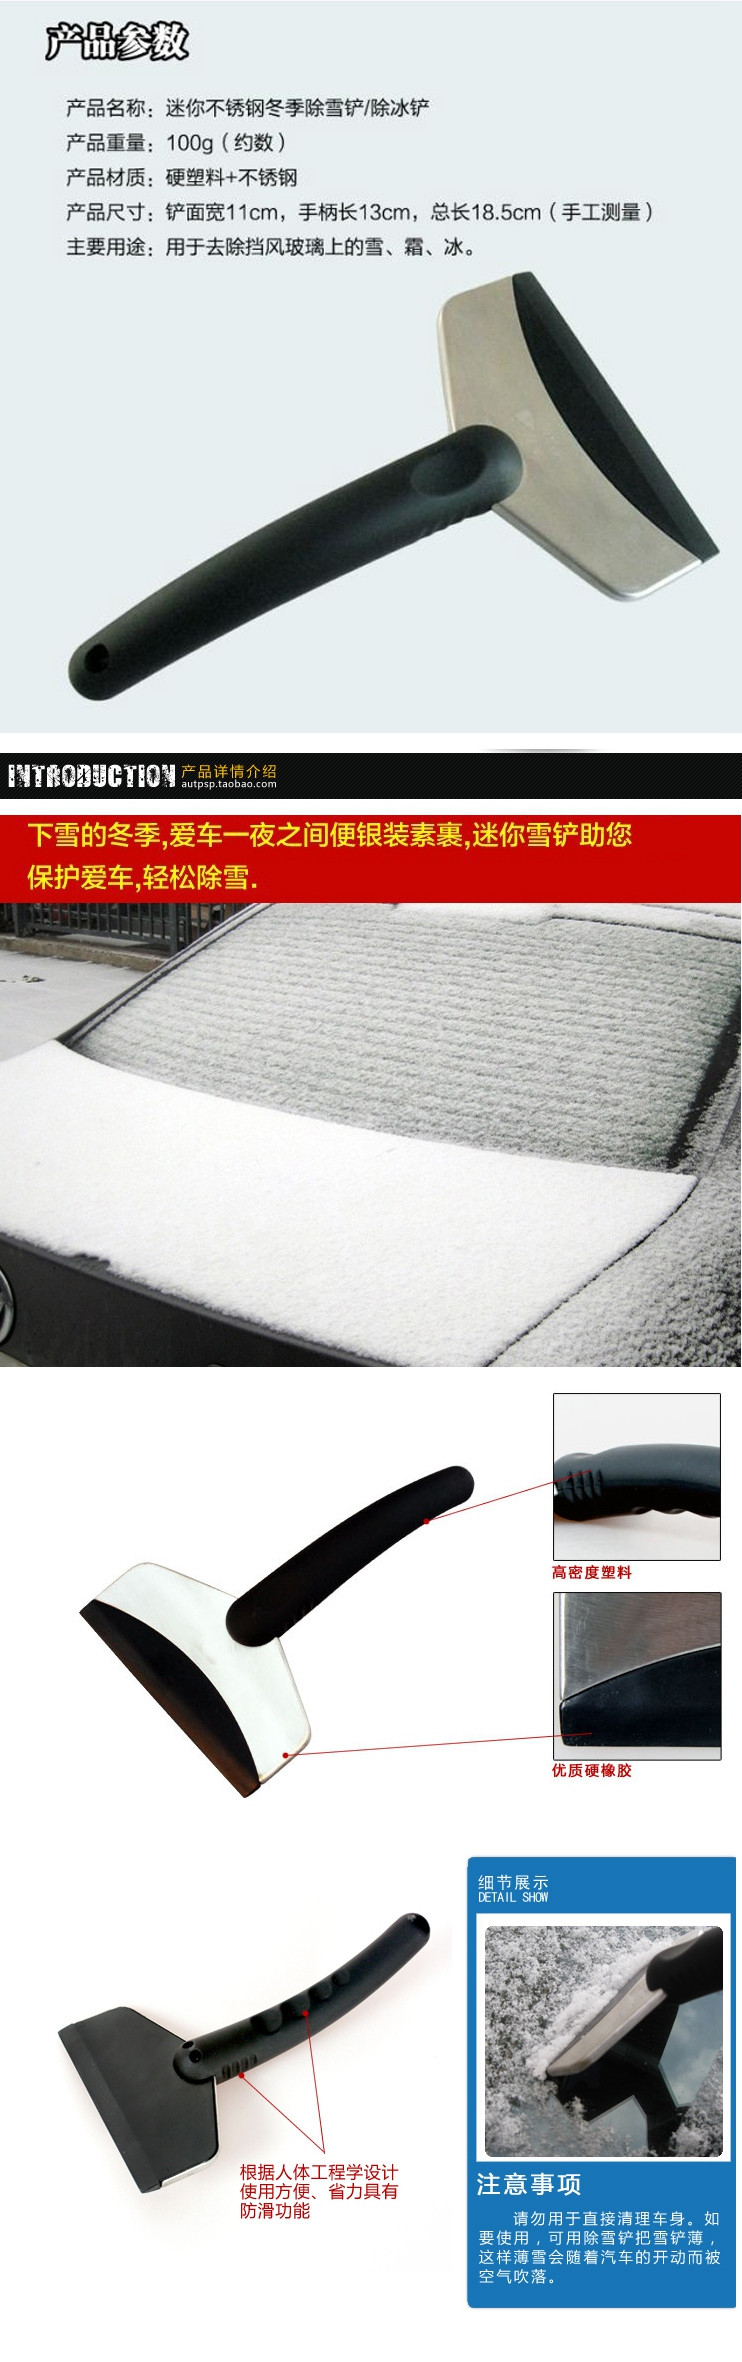 冬季用品 不锈钢汽车冰雪铲11*18.5cm 车用铲雪工具用品